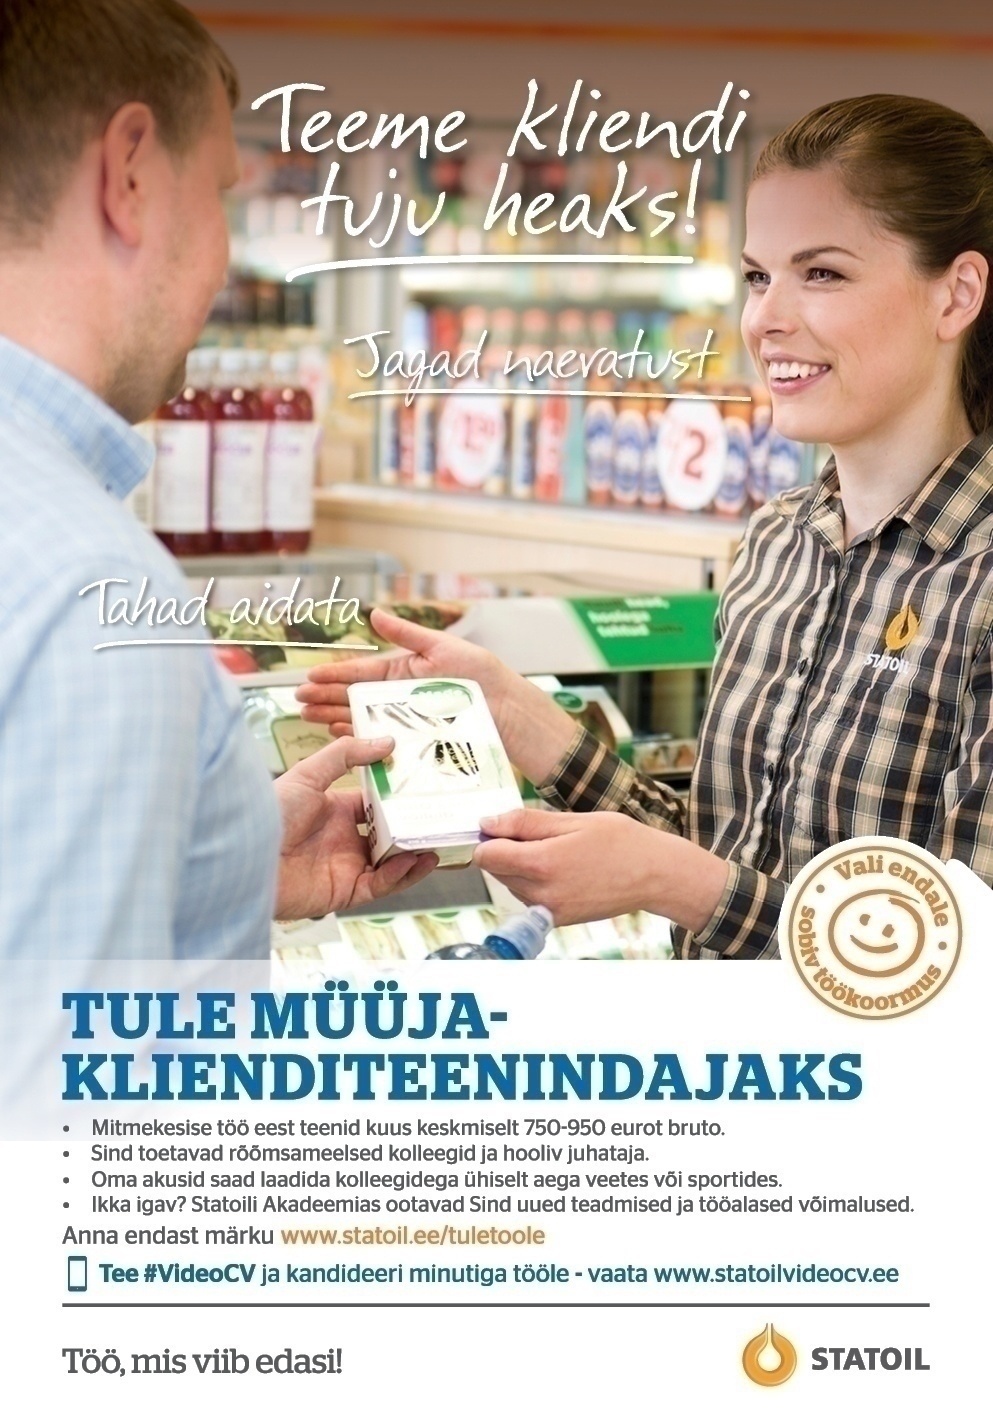 Circle K Eesti AS Müüja-klienditeenindaja Tallinna Peterburi mnt teenindusjaama